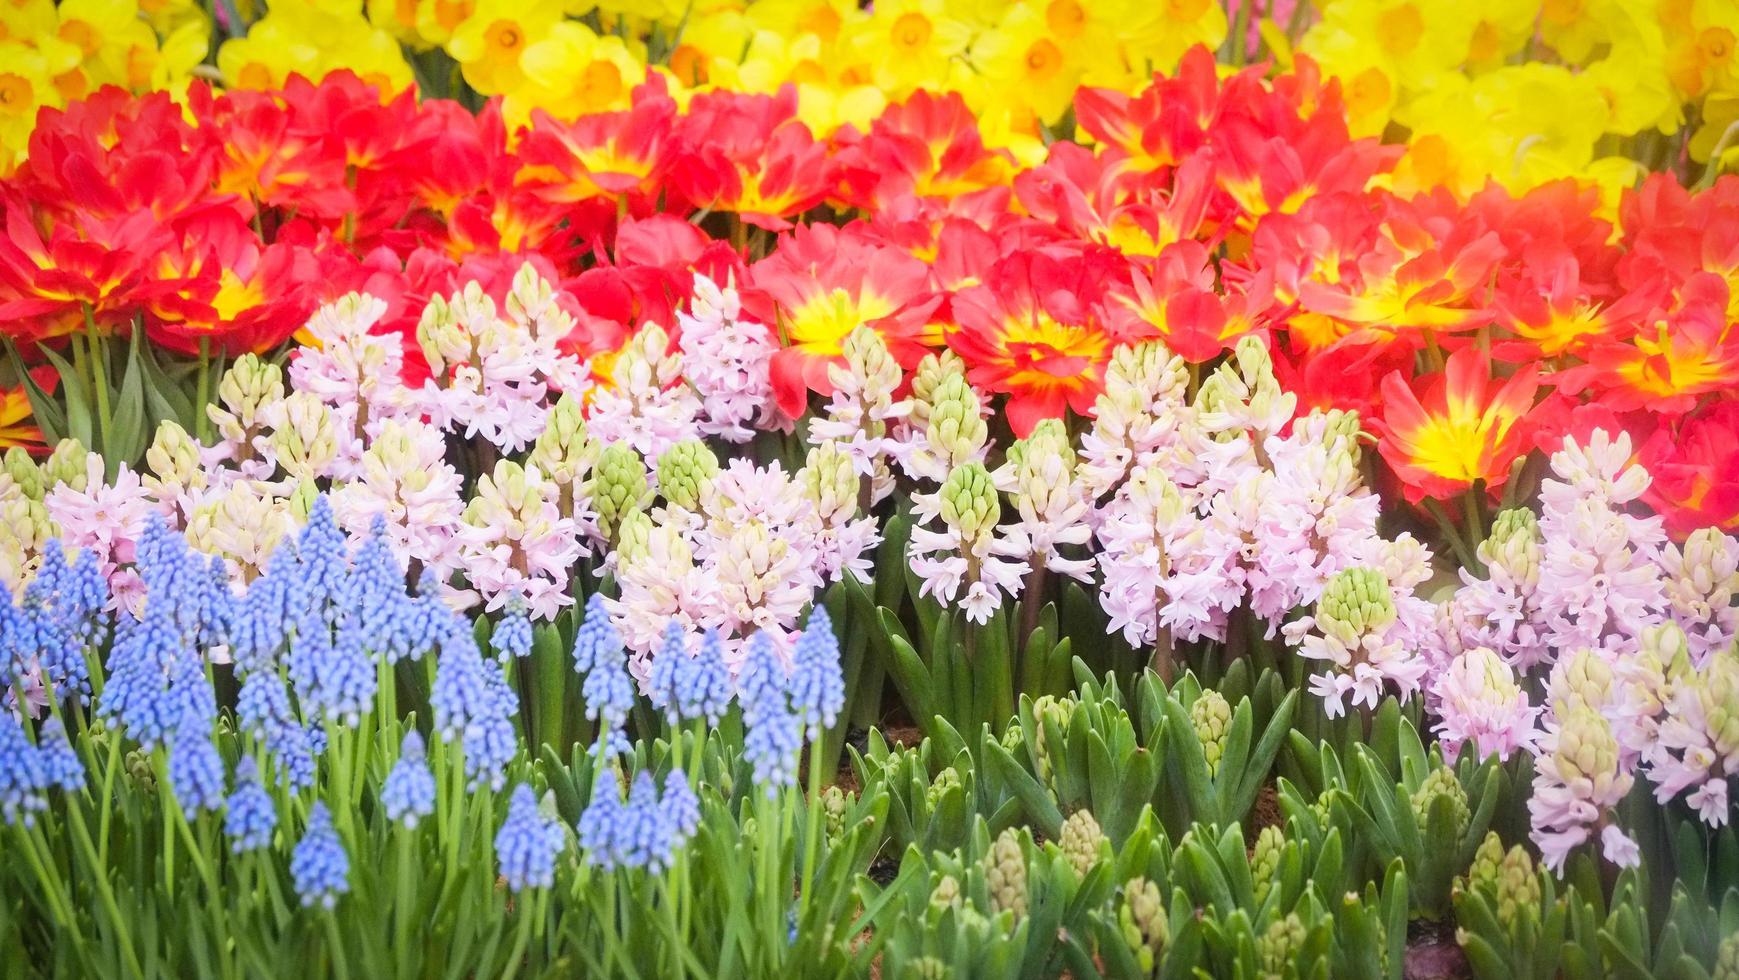 Décoration florale de tulipes colorées dans le jardin - beau champ de tulipes en fleurs fond floral de printemps photo